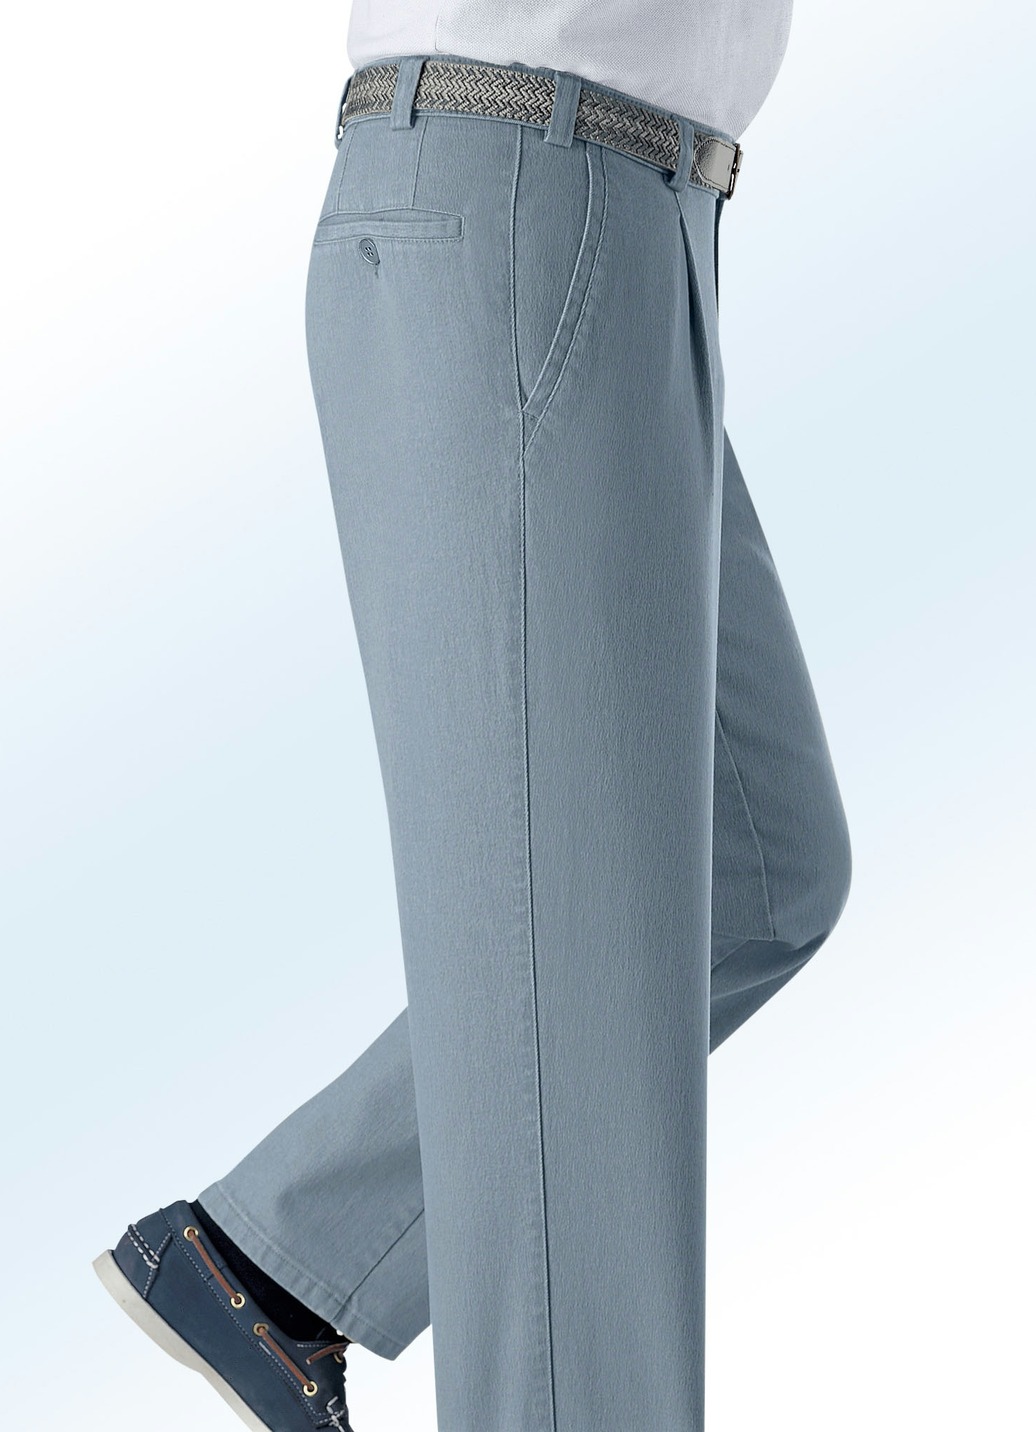 Unterbauch-Jeans mit Gürtel in 3 Farben, Mittelgrau, Größe 30 von BADER